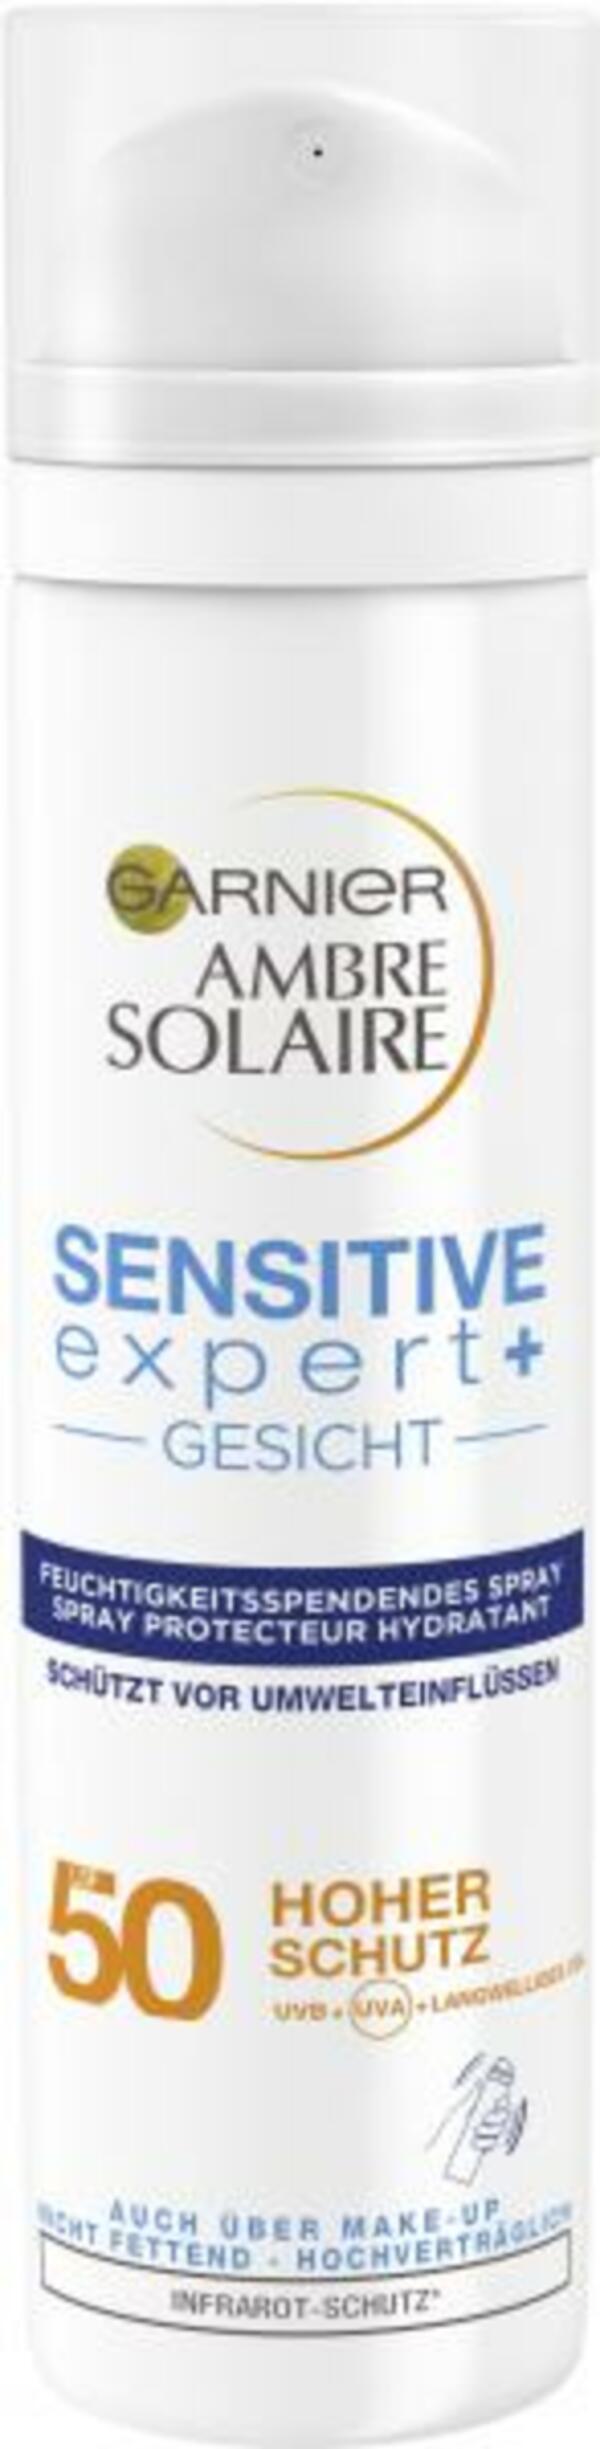 Bild 1 von Garnier Ambre Solaire Sensitiv Expert+ Gesicht LSF 50